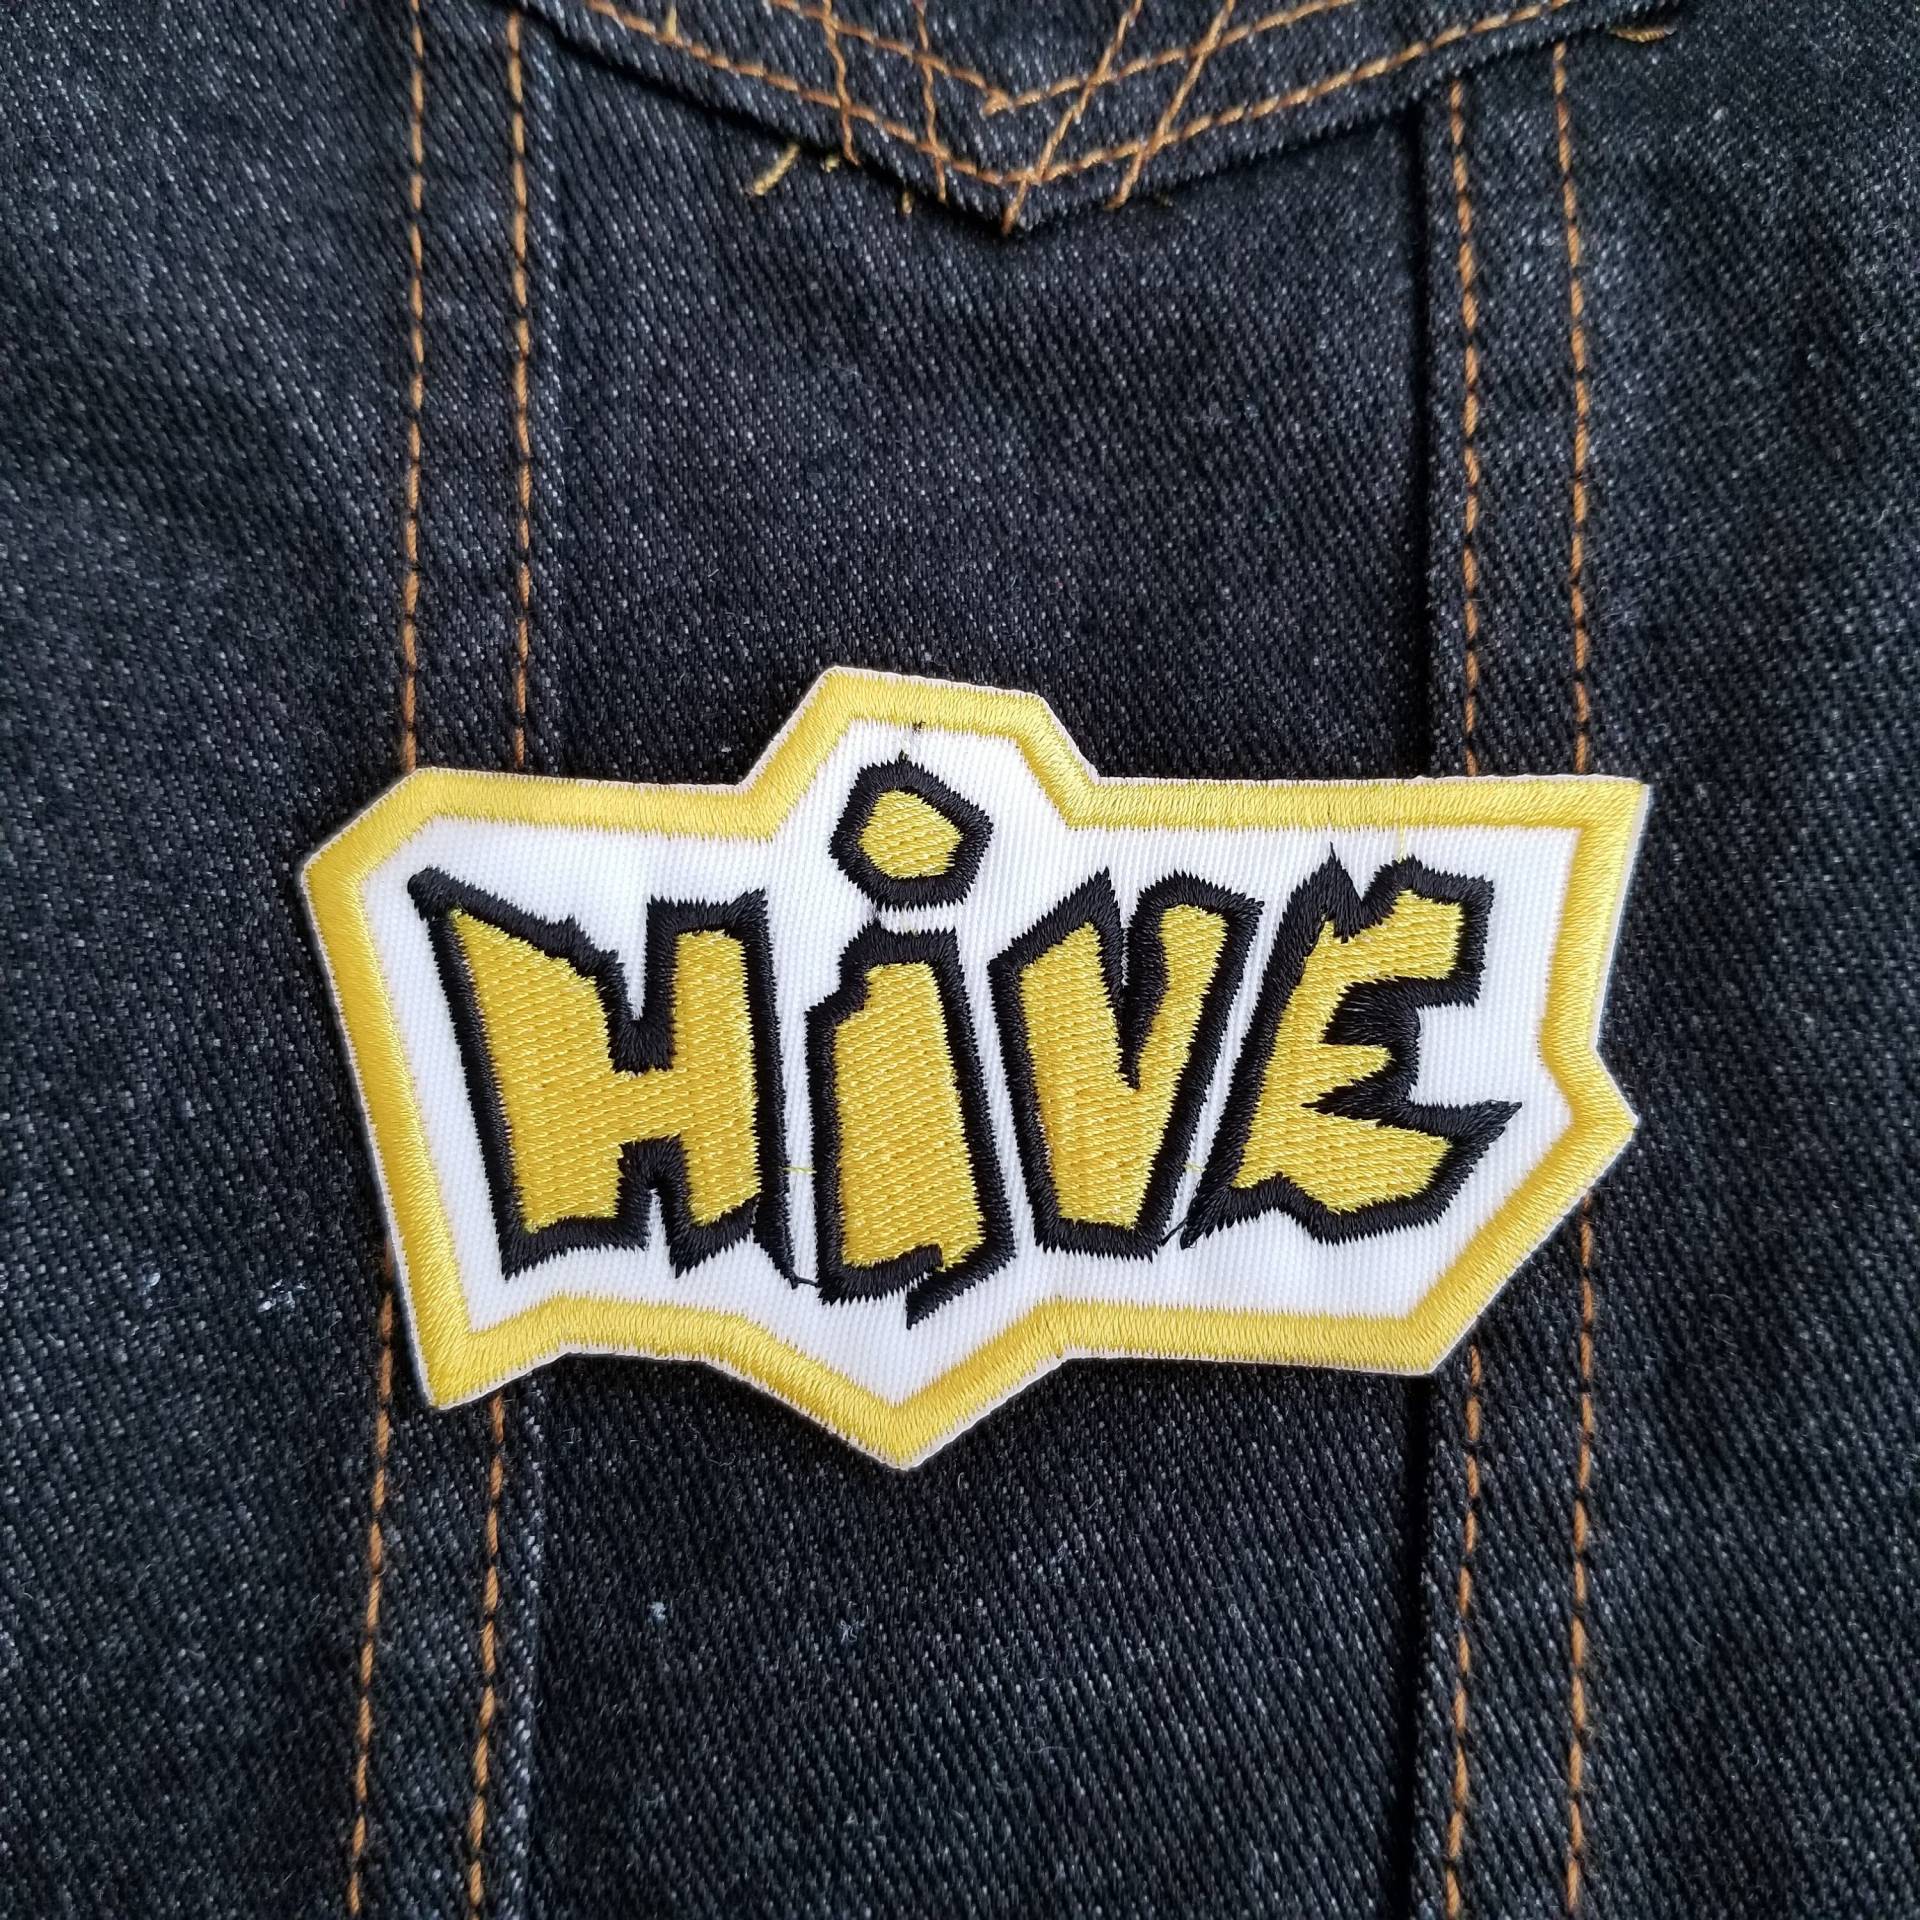 Hive 3.5" Inch Aufnäher Zum Aufnähen; Abstraktes Brettspiel von ThreadByDawn